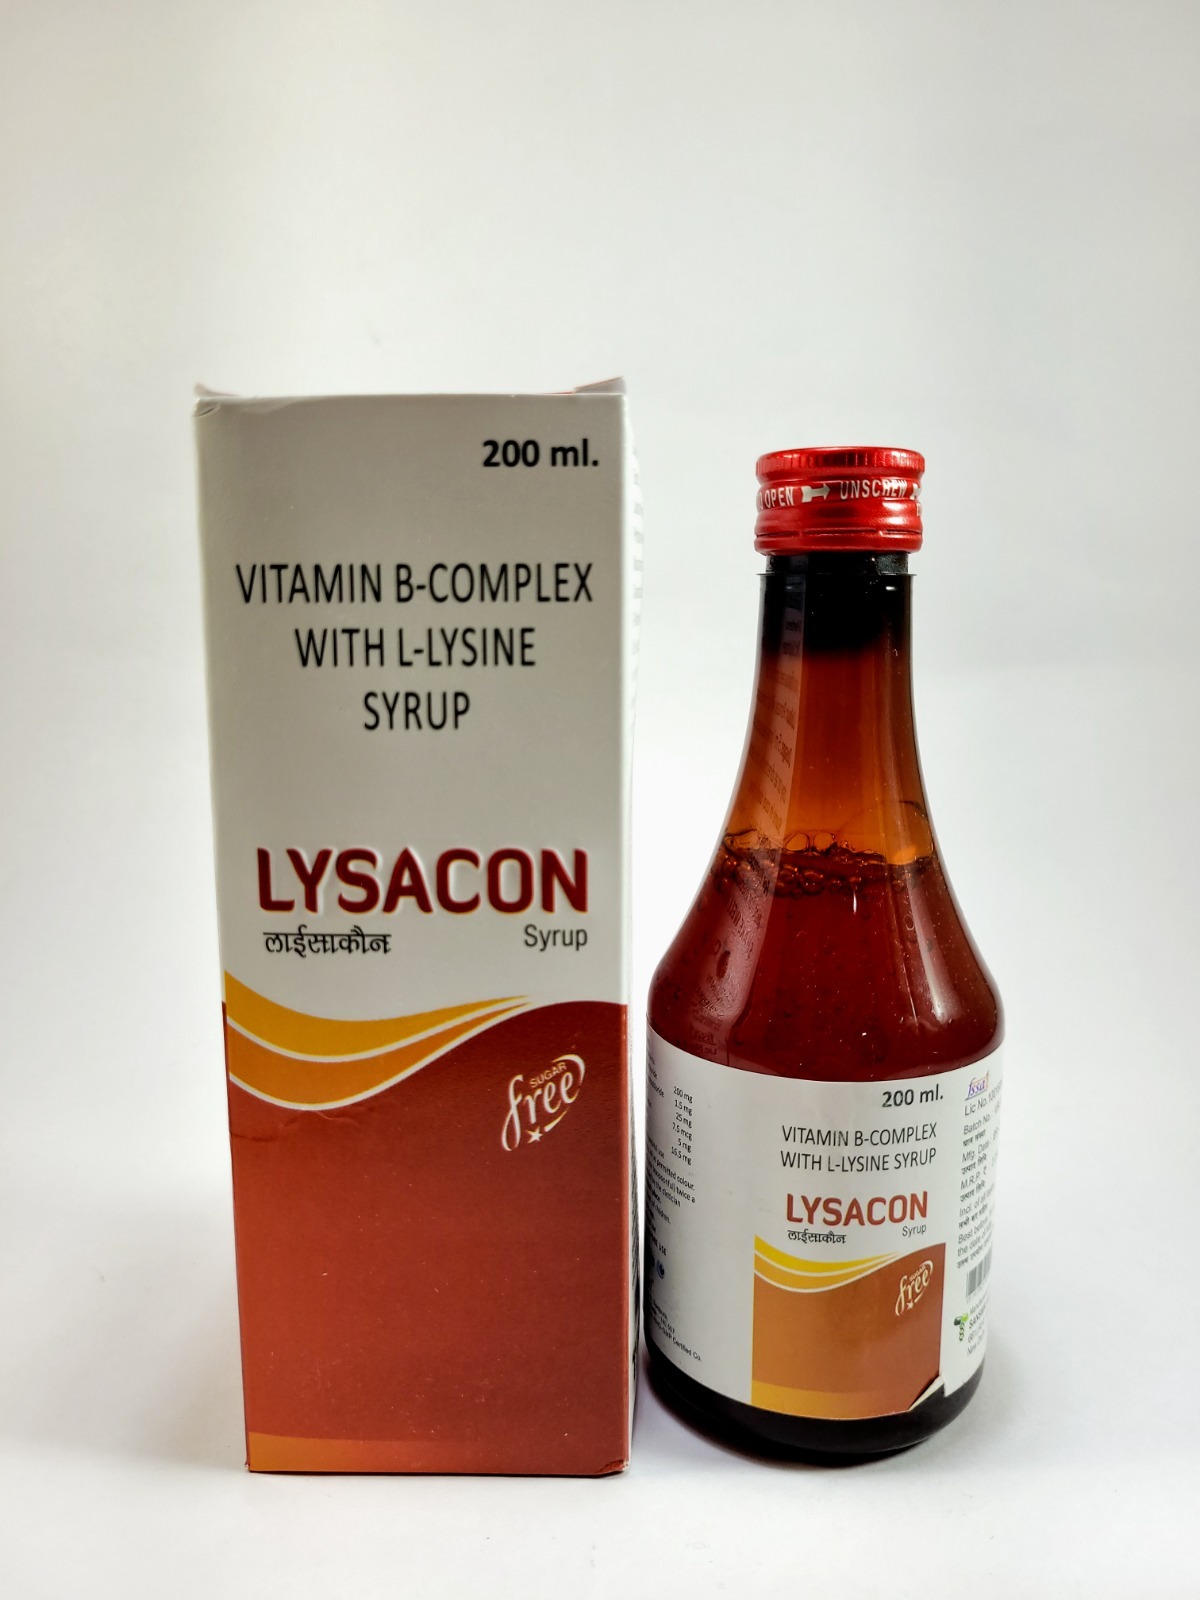 Lysacon syrup